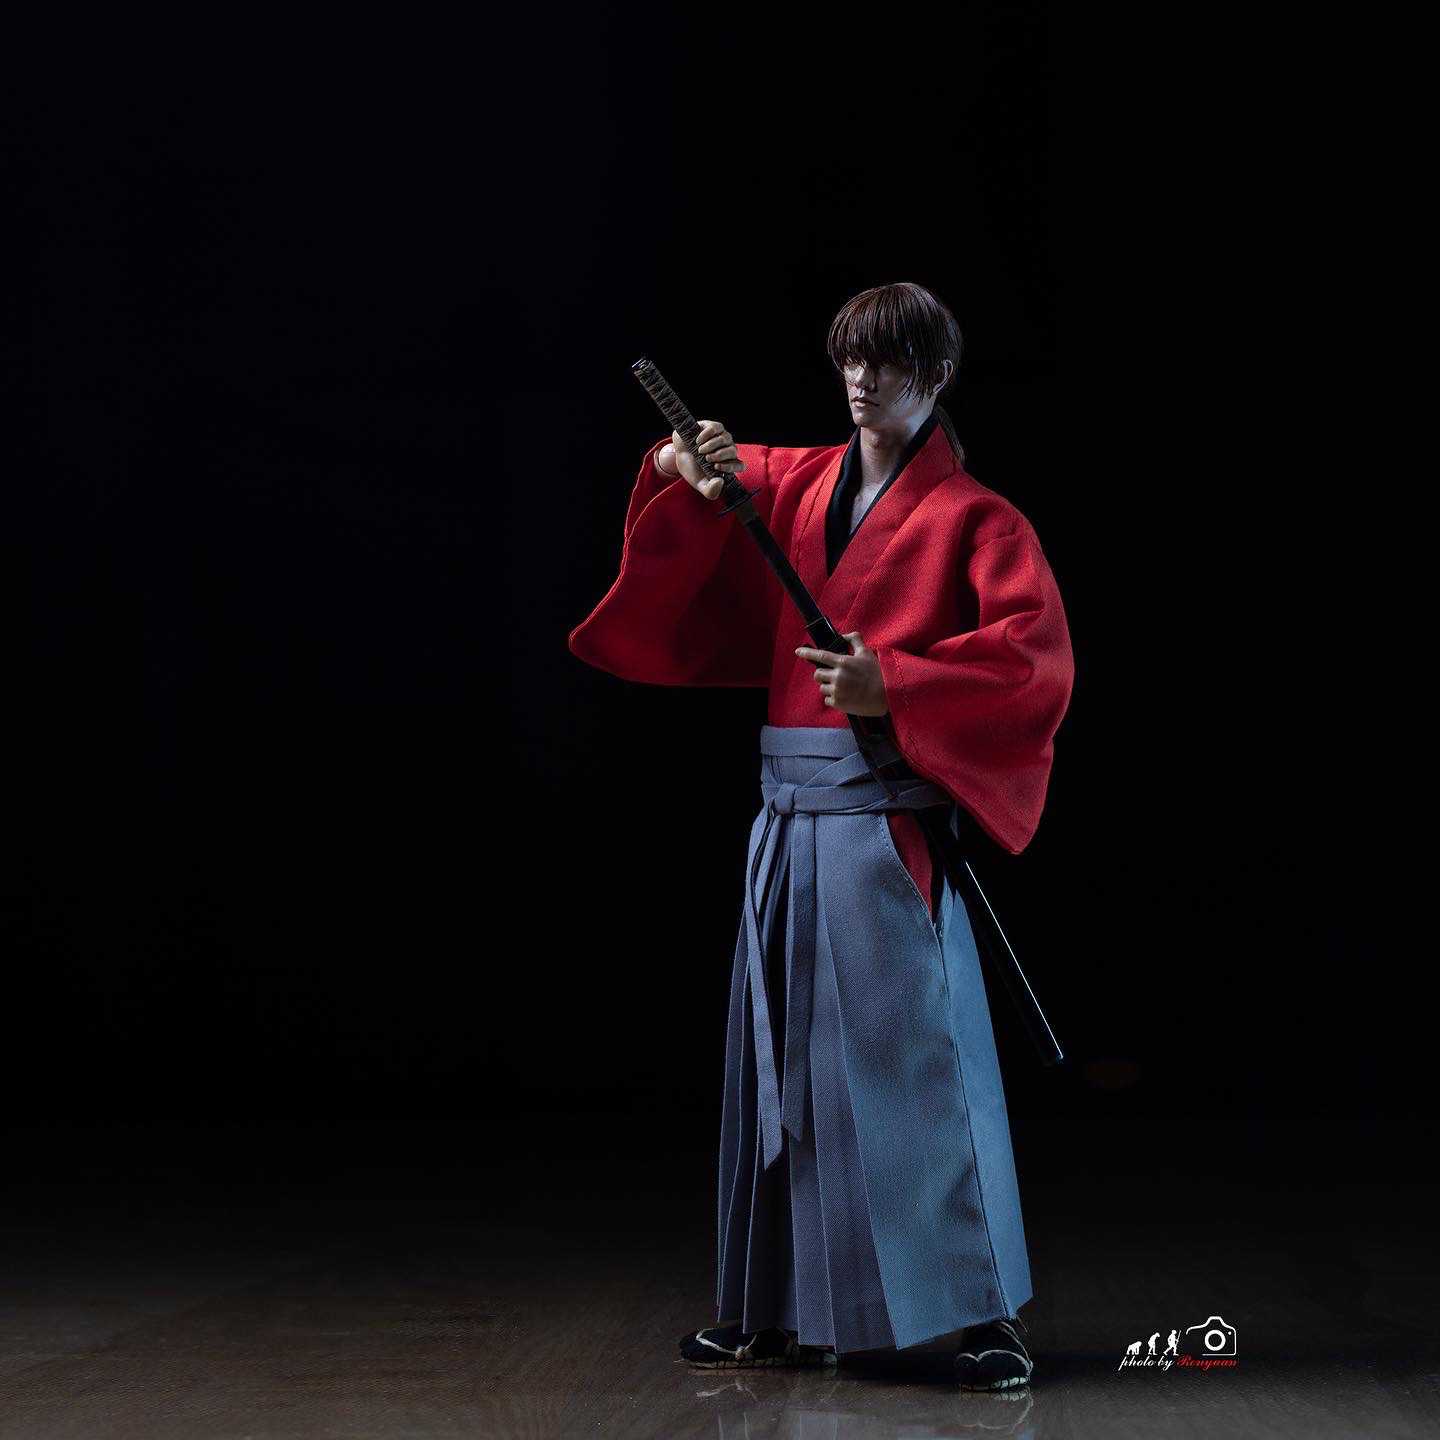 Rurouni Kenshin: The Final / The Beginning 1/6 Scale Figure Himura  Kenshin (Satoh Takeru) - Hiten Mitsurugi-Ryu Battojutsu no Kamae (NOT incl.  movie